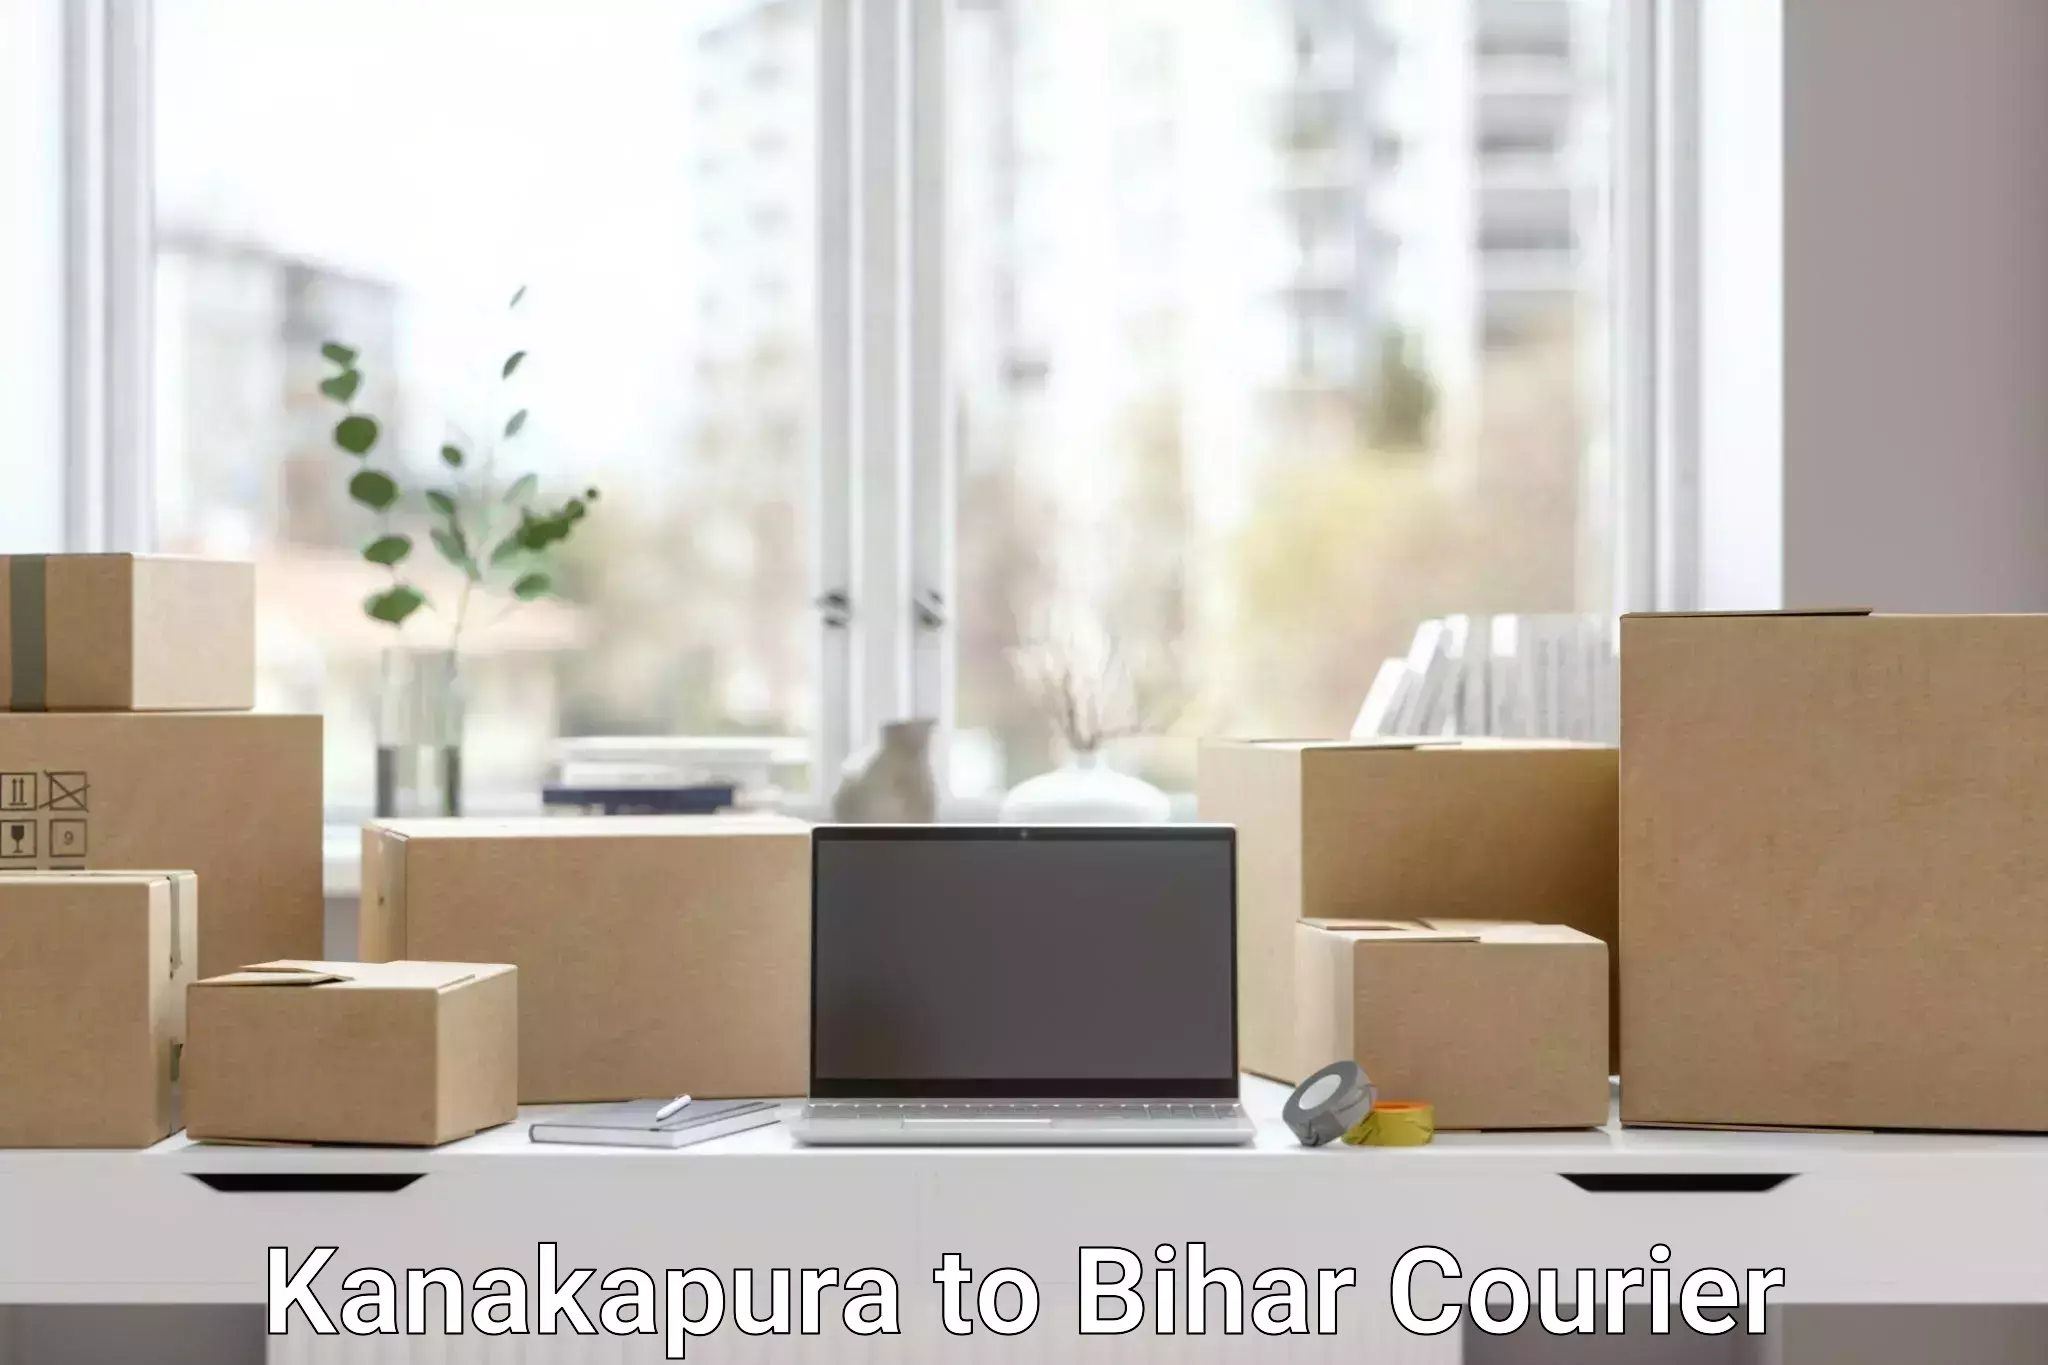 Diverse delivery methods Kanakapura to Bihta